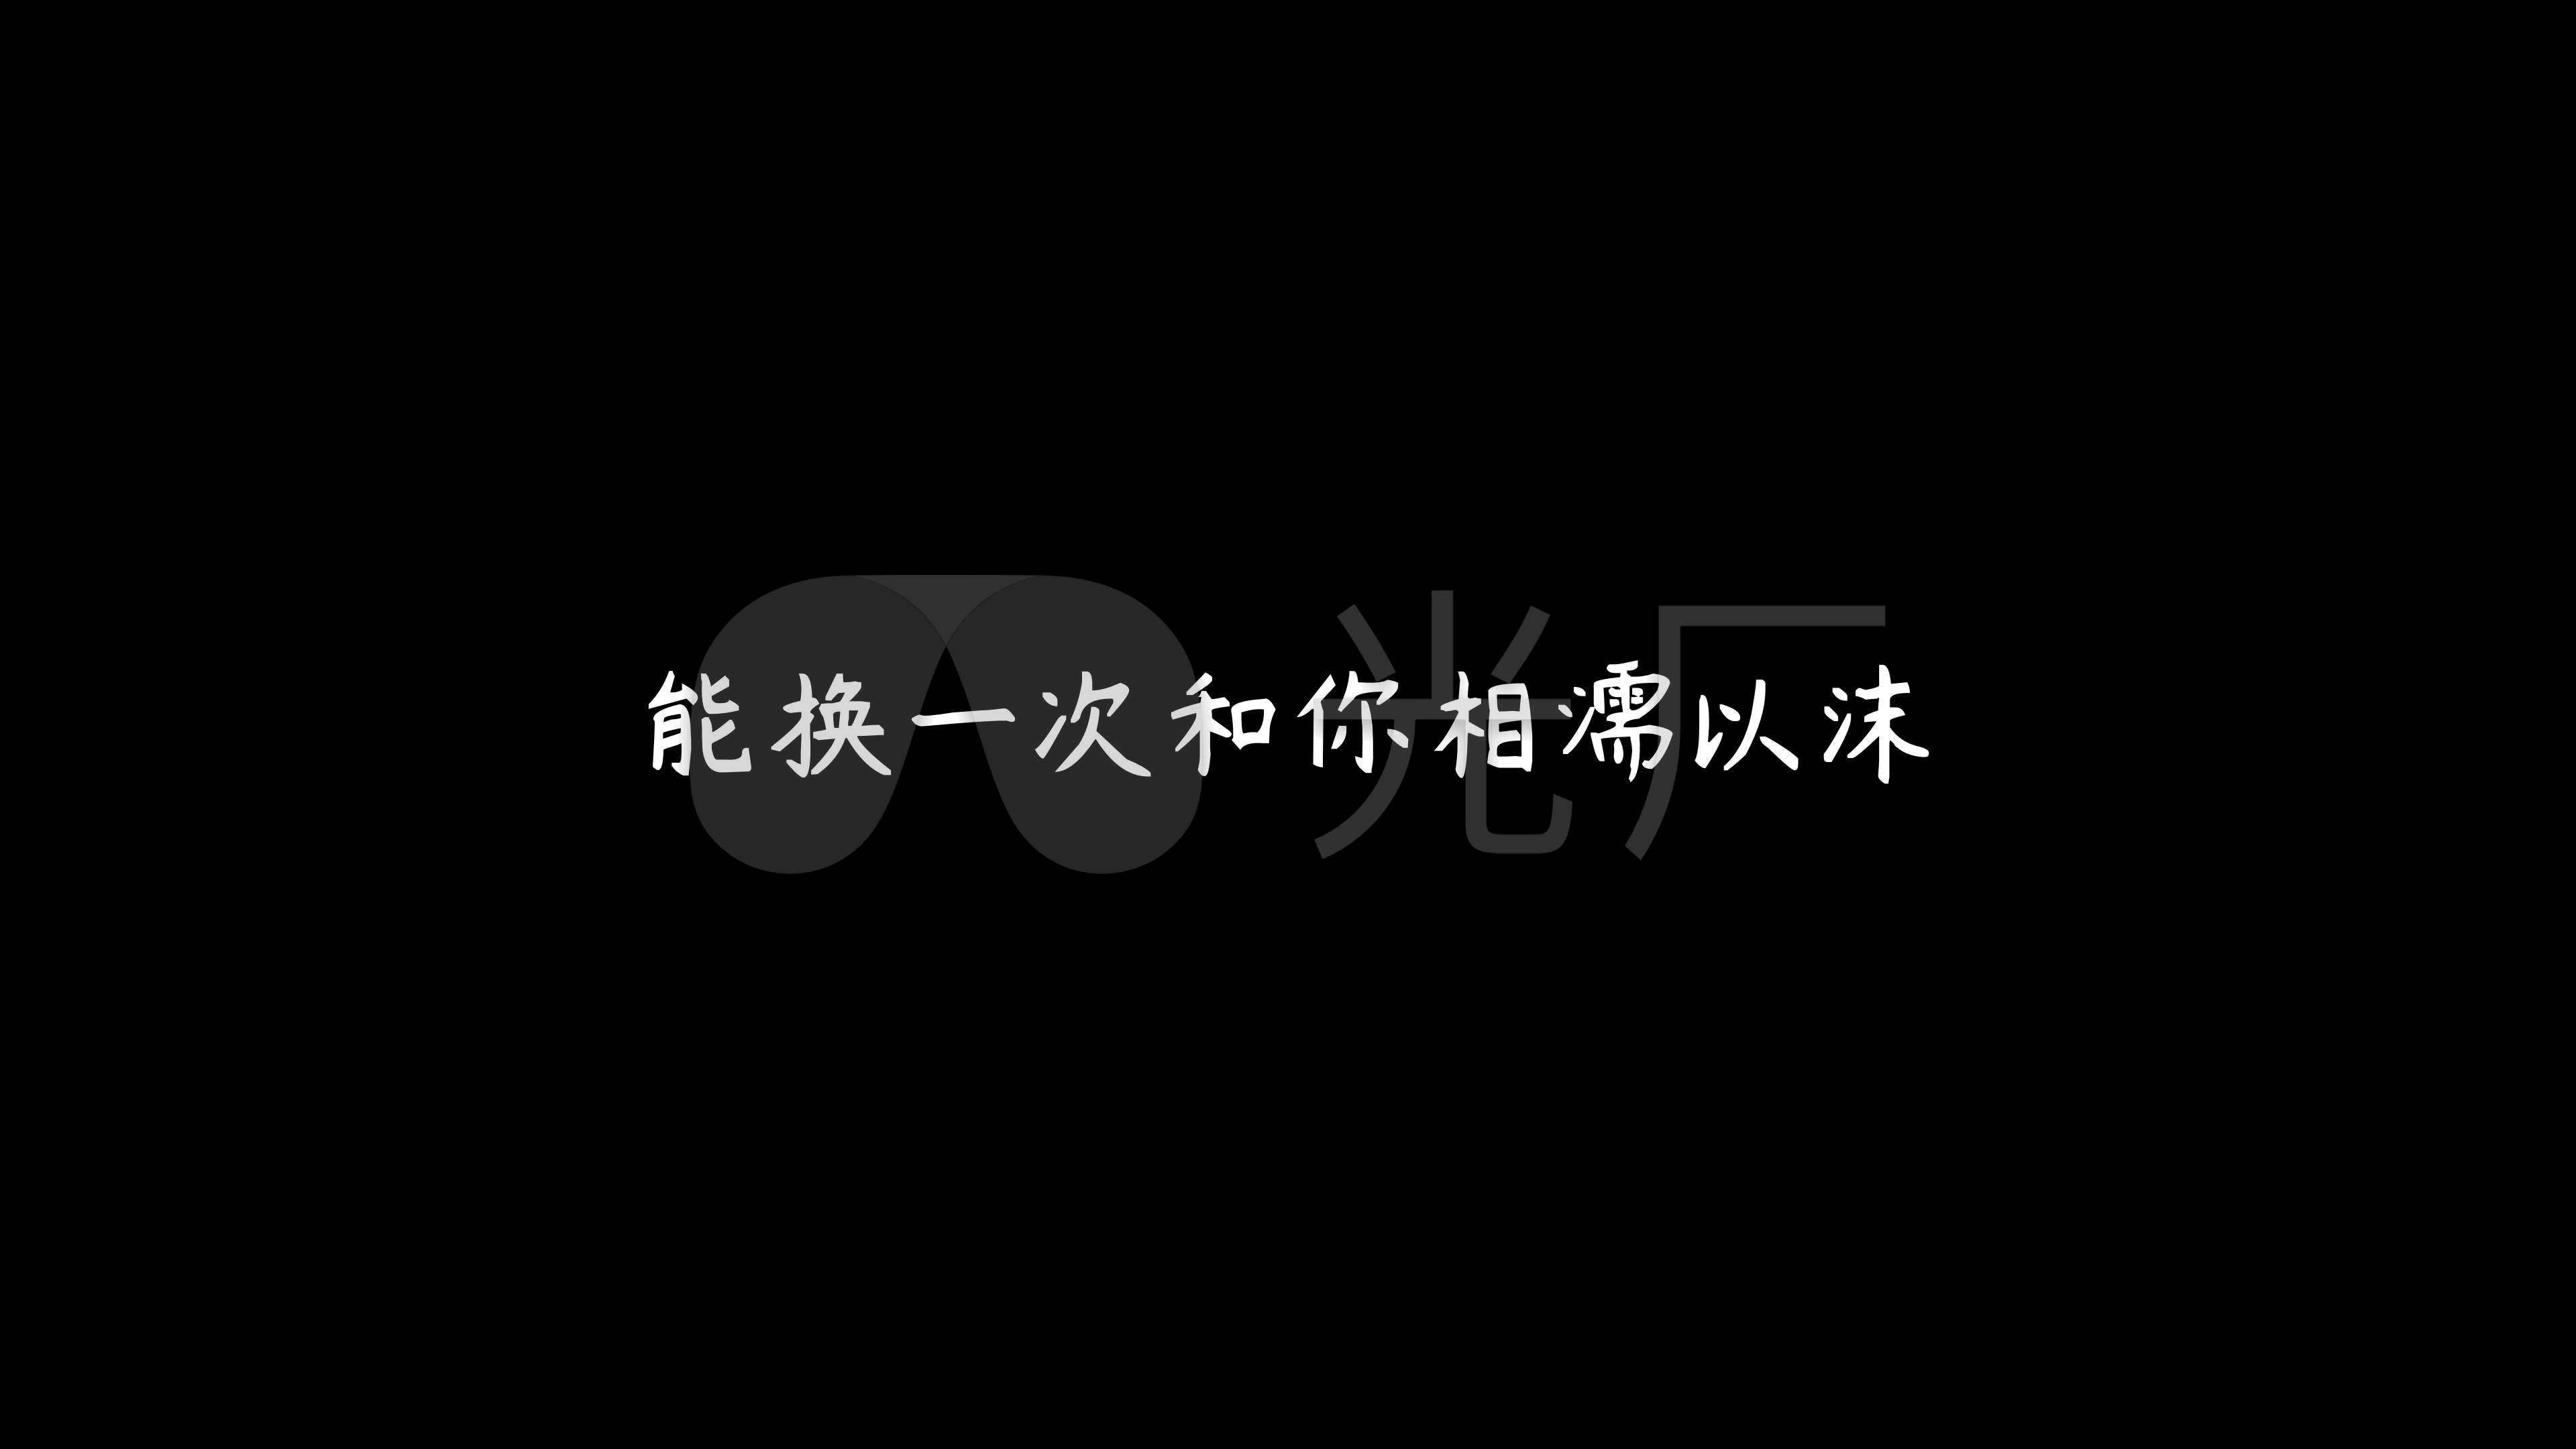 魏佳艺-《忘川的河》(4k)_视频素材包下载(编号:)__vj